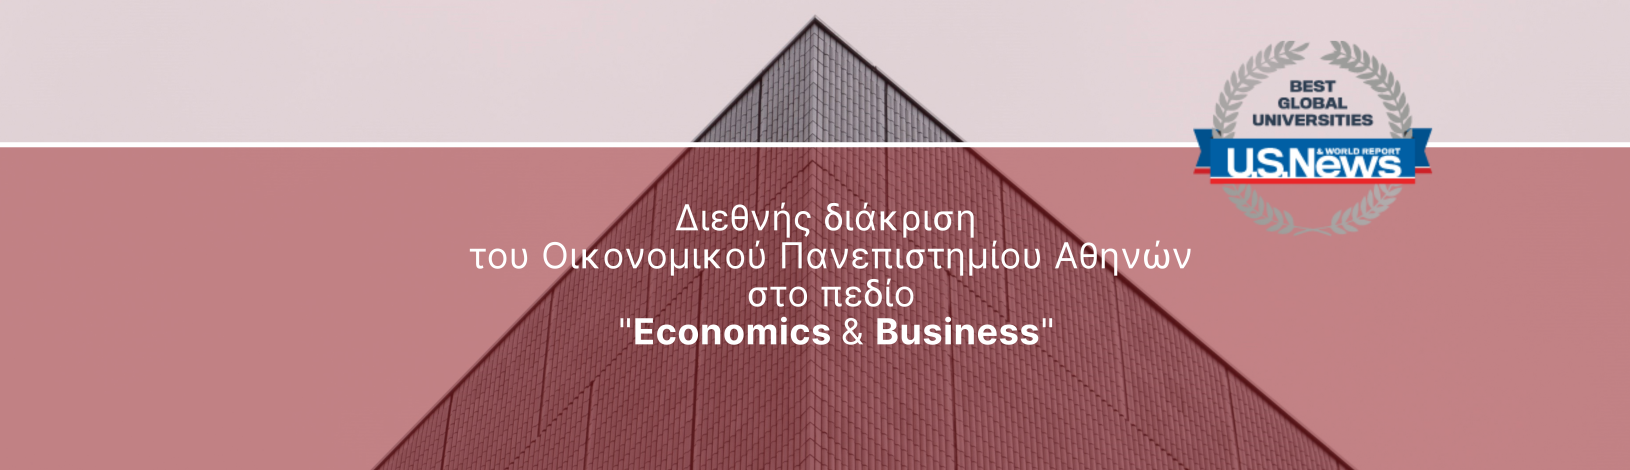 Διεθνής διάκριση του Οικονομικού Πανεπιστημίου Αθηνών στο πεδίο των «Οικονομικών και της Διοίκησης Επιχειρήσεων»